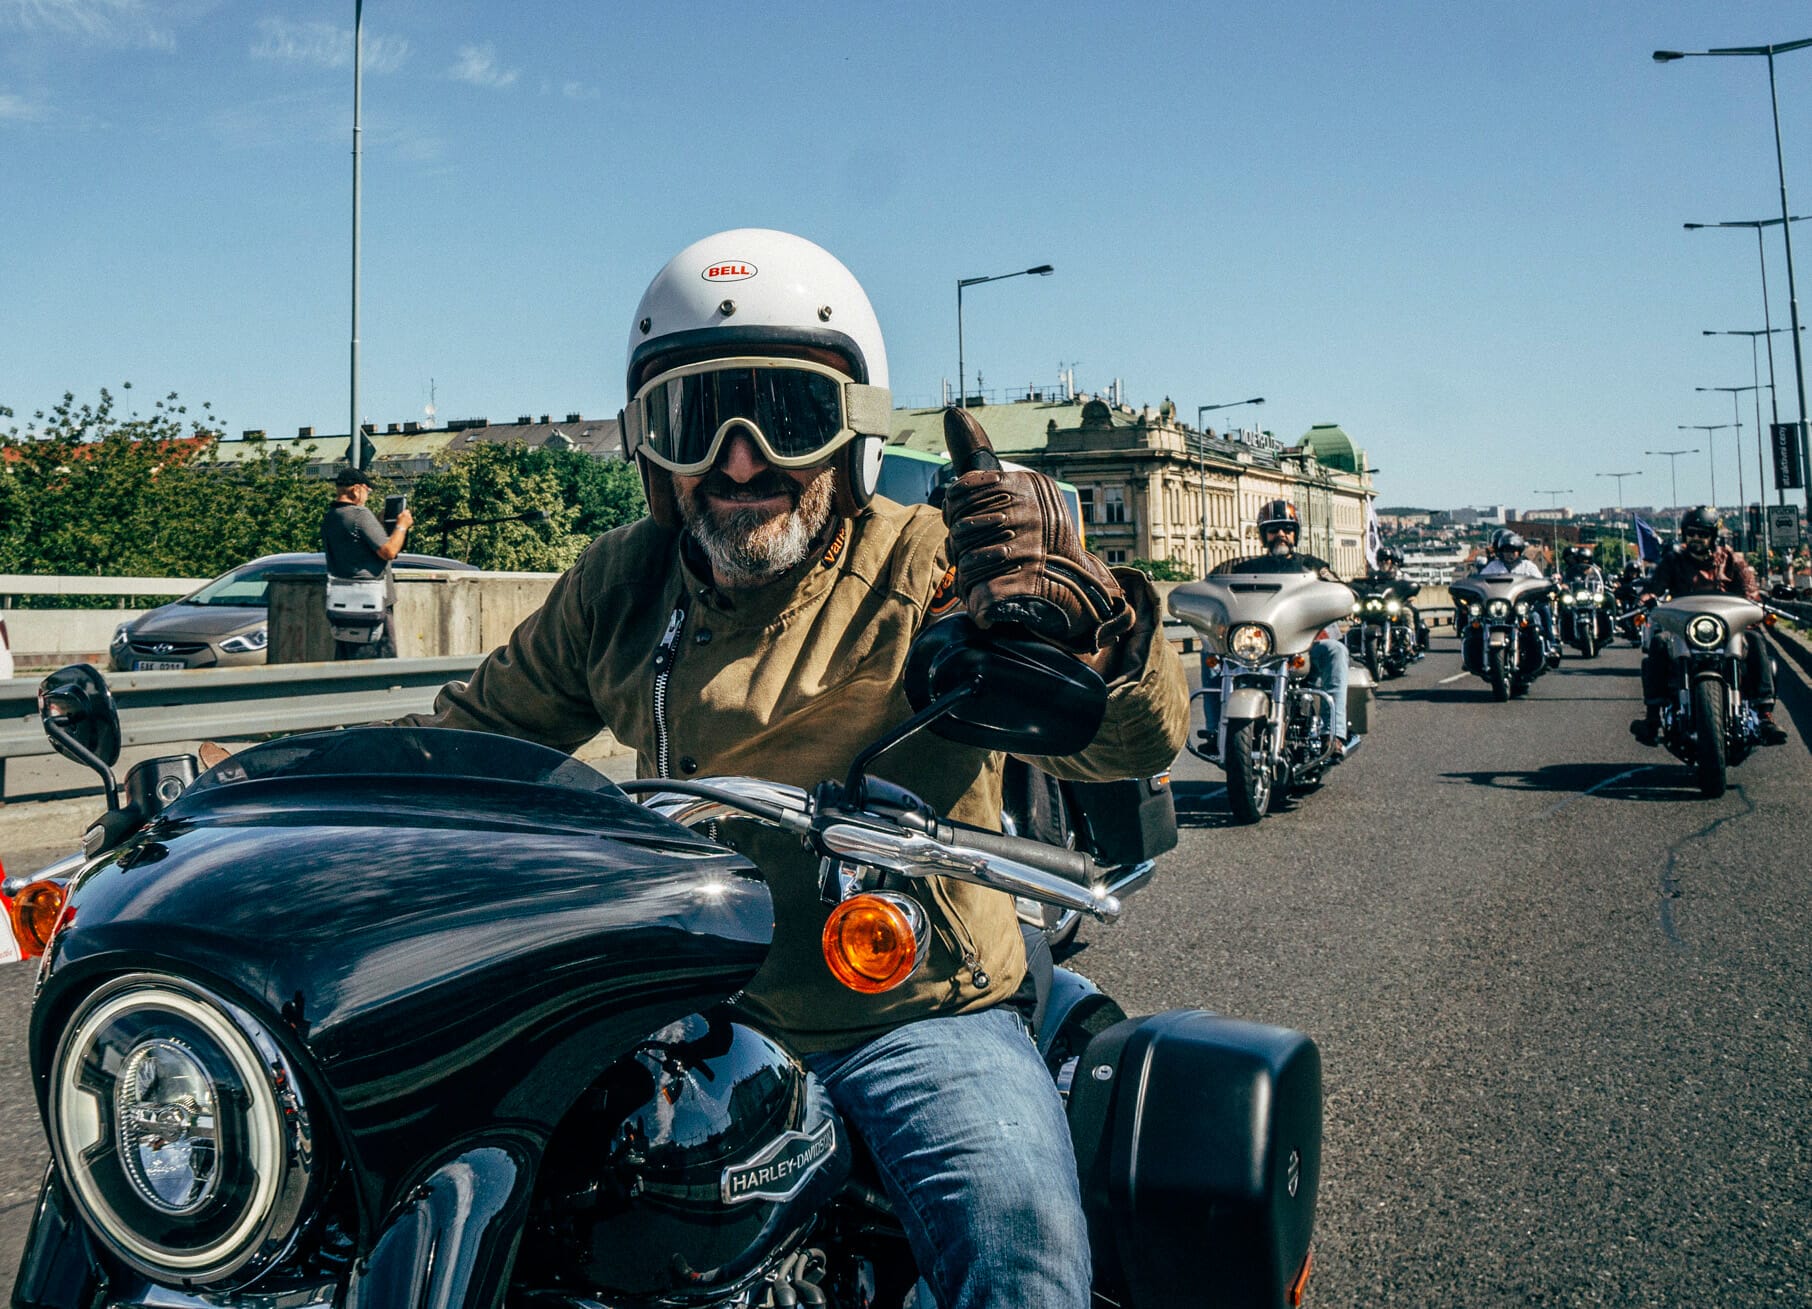 Harley-Davidson plant fünf Veranstaltungen für 2021
- auch in der MOTORRAD NACHRICHTEN APP